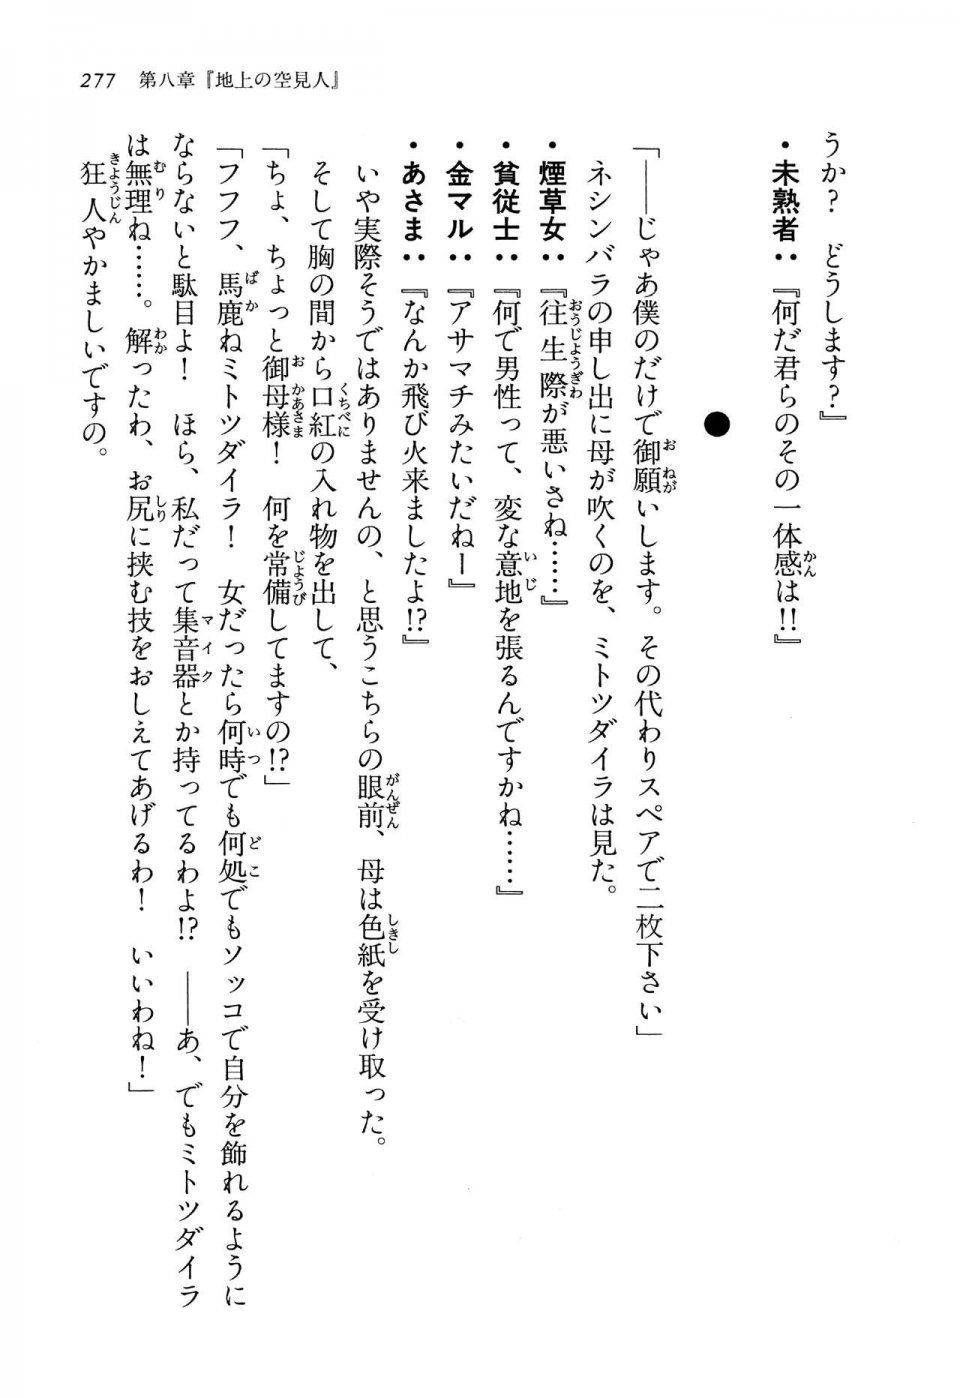 Kyoukai Senjou no Horizon LN Vol 13(6A) - Photo #277